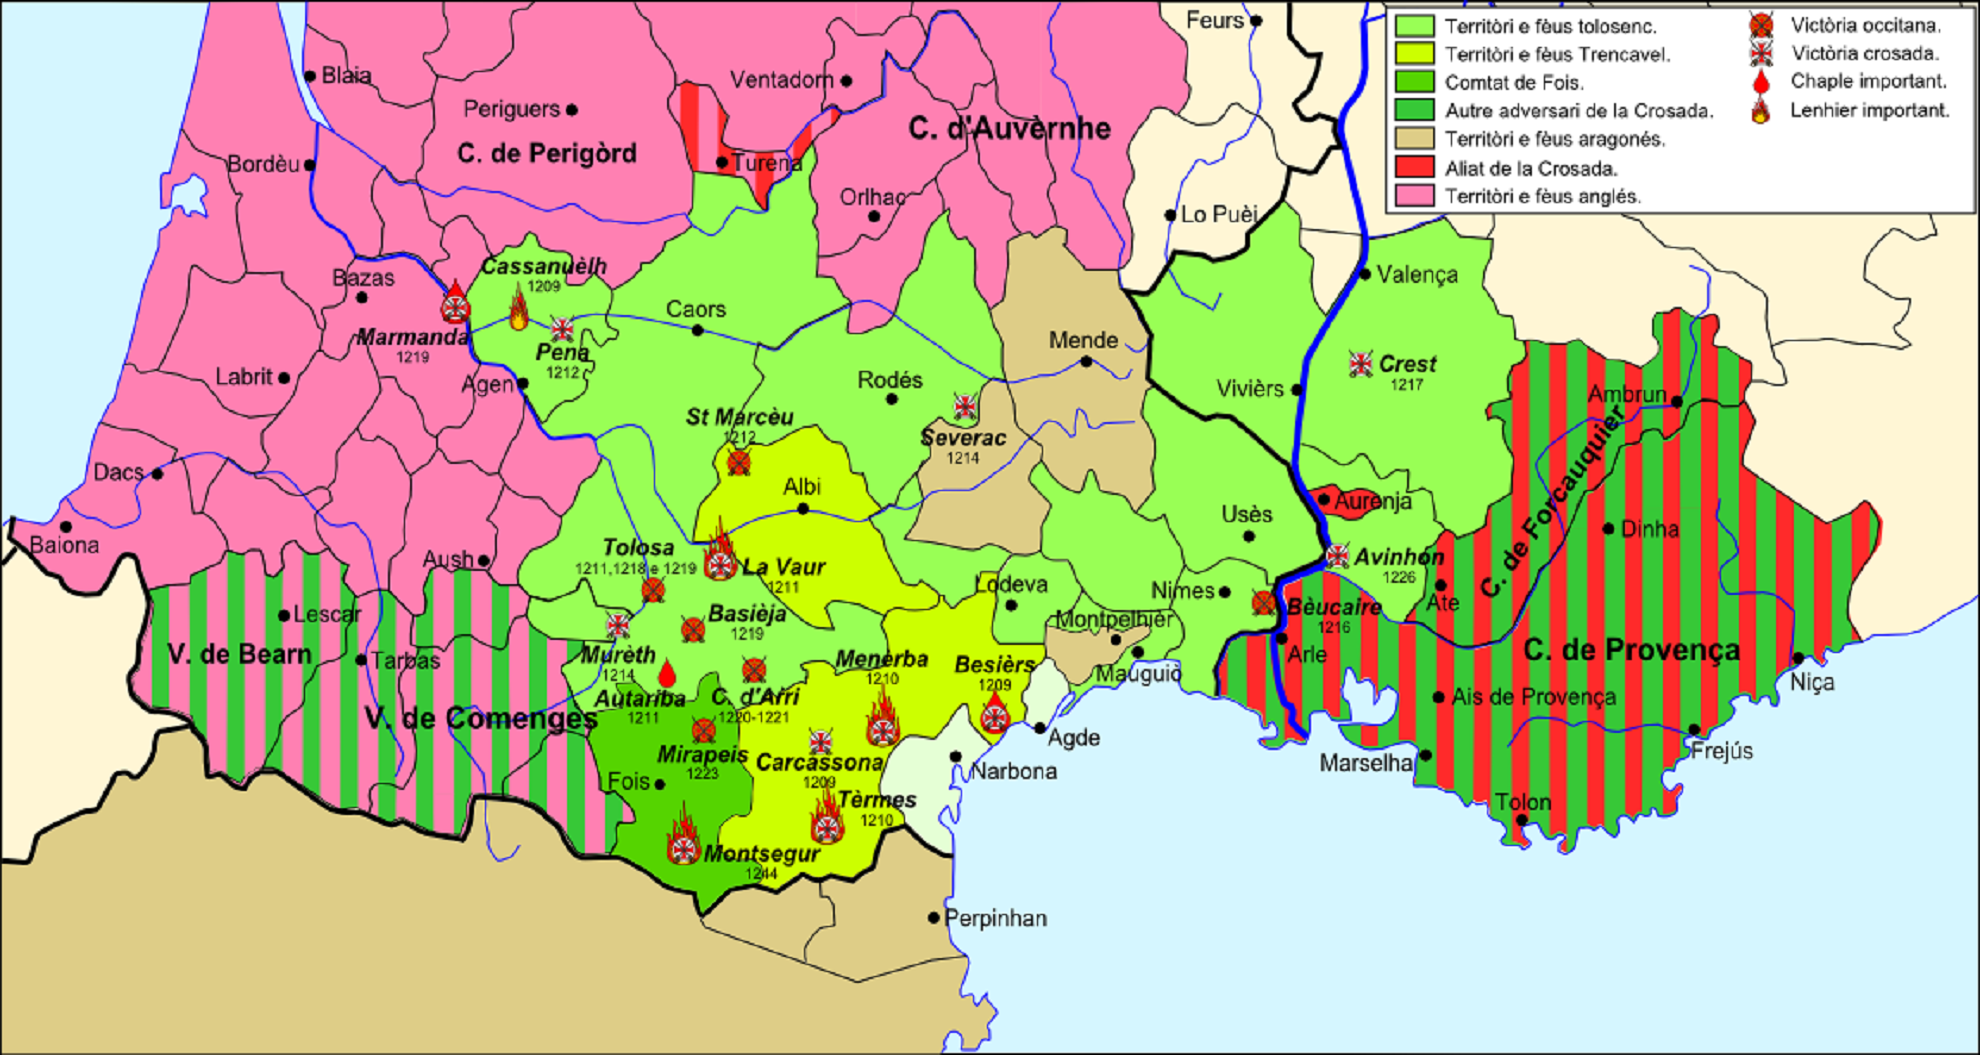 Mapa político de Occitania y de los dominios Trencavell a principios del siglo XIII. Font Wikiwand